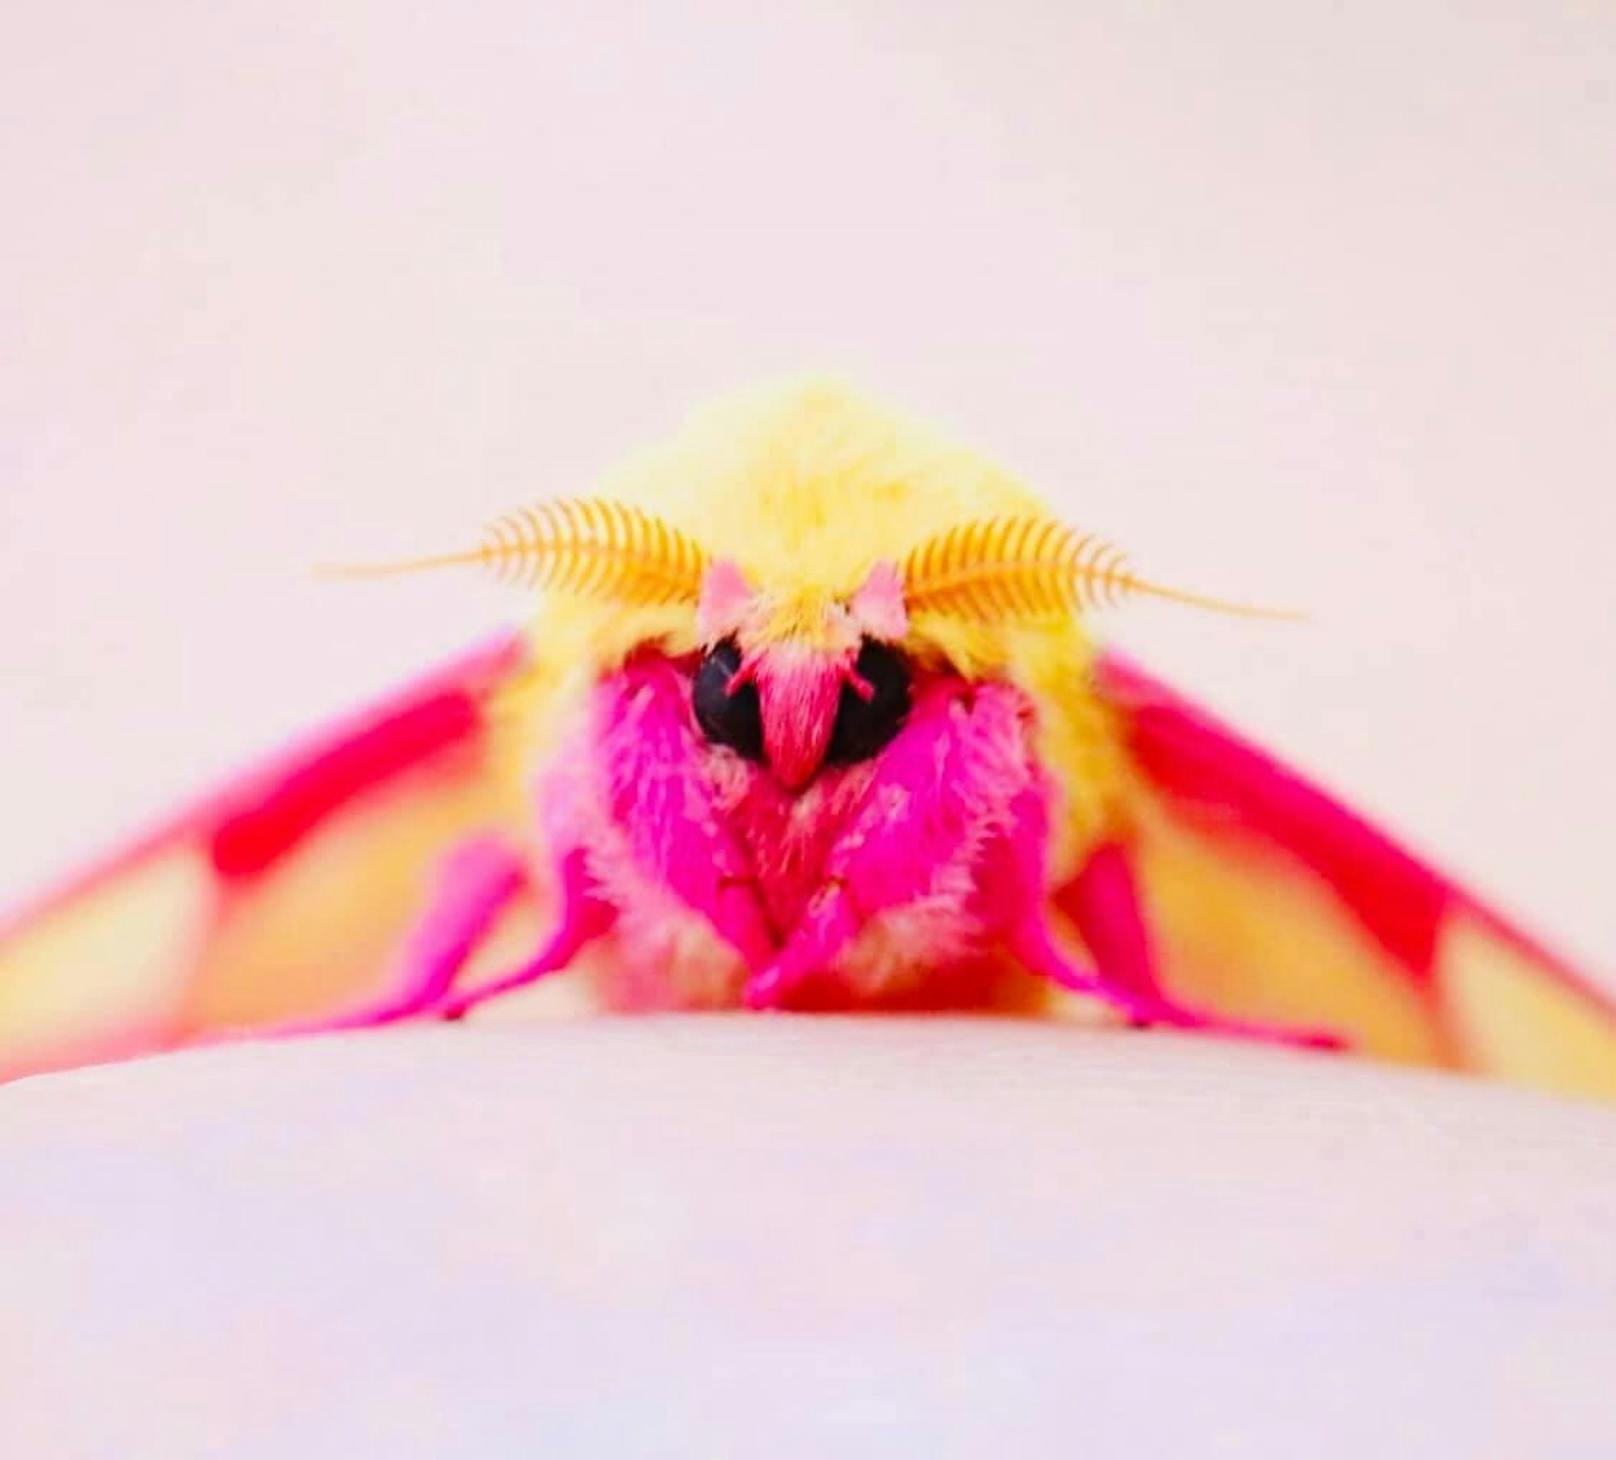 Wer bekommt jetzt Lust auf Eis? Der „Rosy maple moth“ (dryocampa rubicunda) sieht so surreal aus, als würde er soeben aus dem Regenwald eines Märchens entlehnt worden sein. In Europa darf er nicht ausgesetzt werden. Er gehört zu den auffälligsten Faltern aus der Zucht der Schweizerin Cornelia Bähni. Dieser exotische, aus Nordamerika stammende Falter sieht mit seiner fluffig-gelb-pinken Färbung aus der Weite aus wie eine Süßigkeit. 